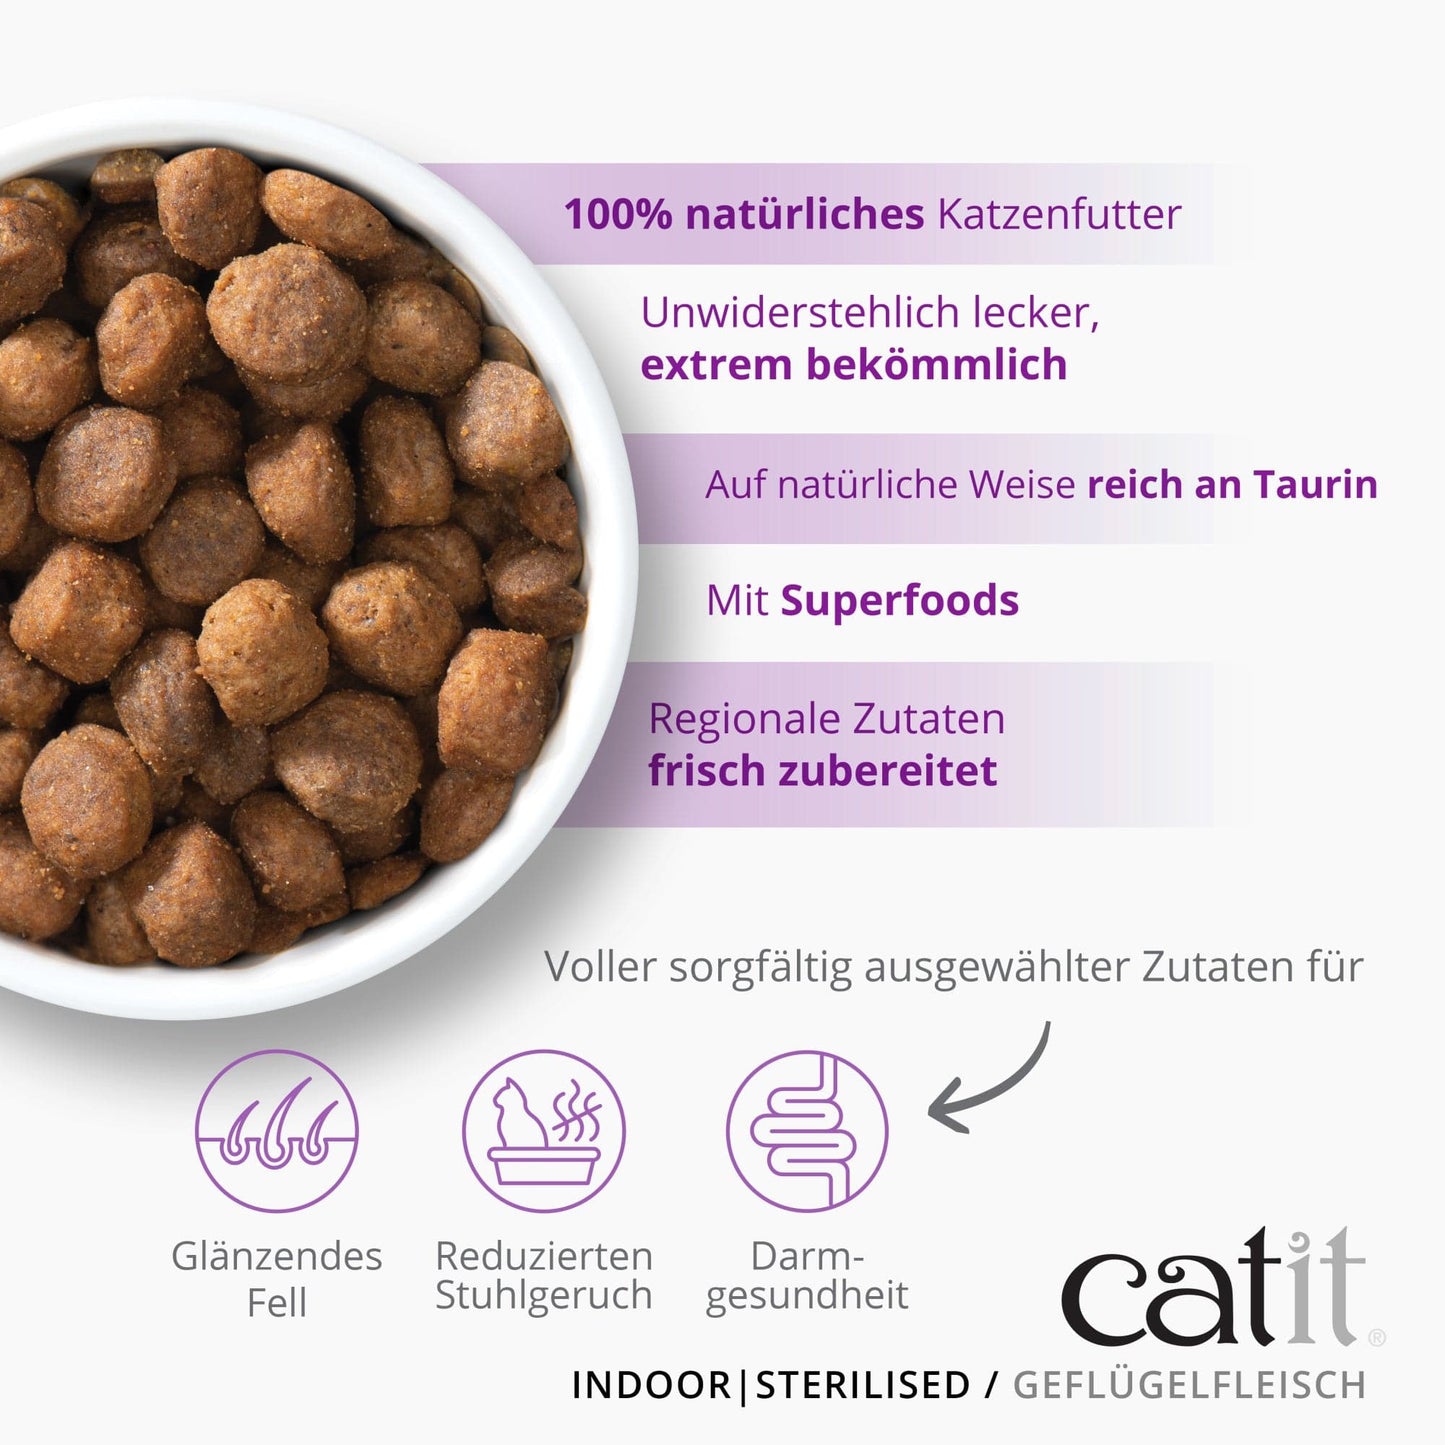 Catit Recipes – INDOOR Geflügelfleisch, 2 kg